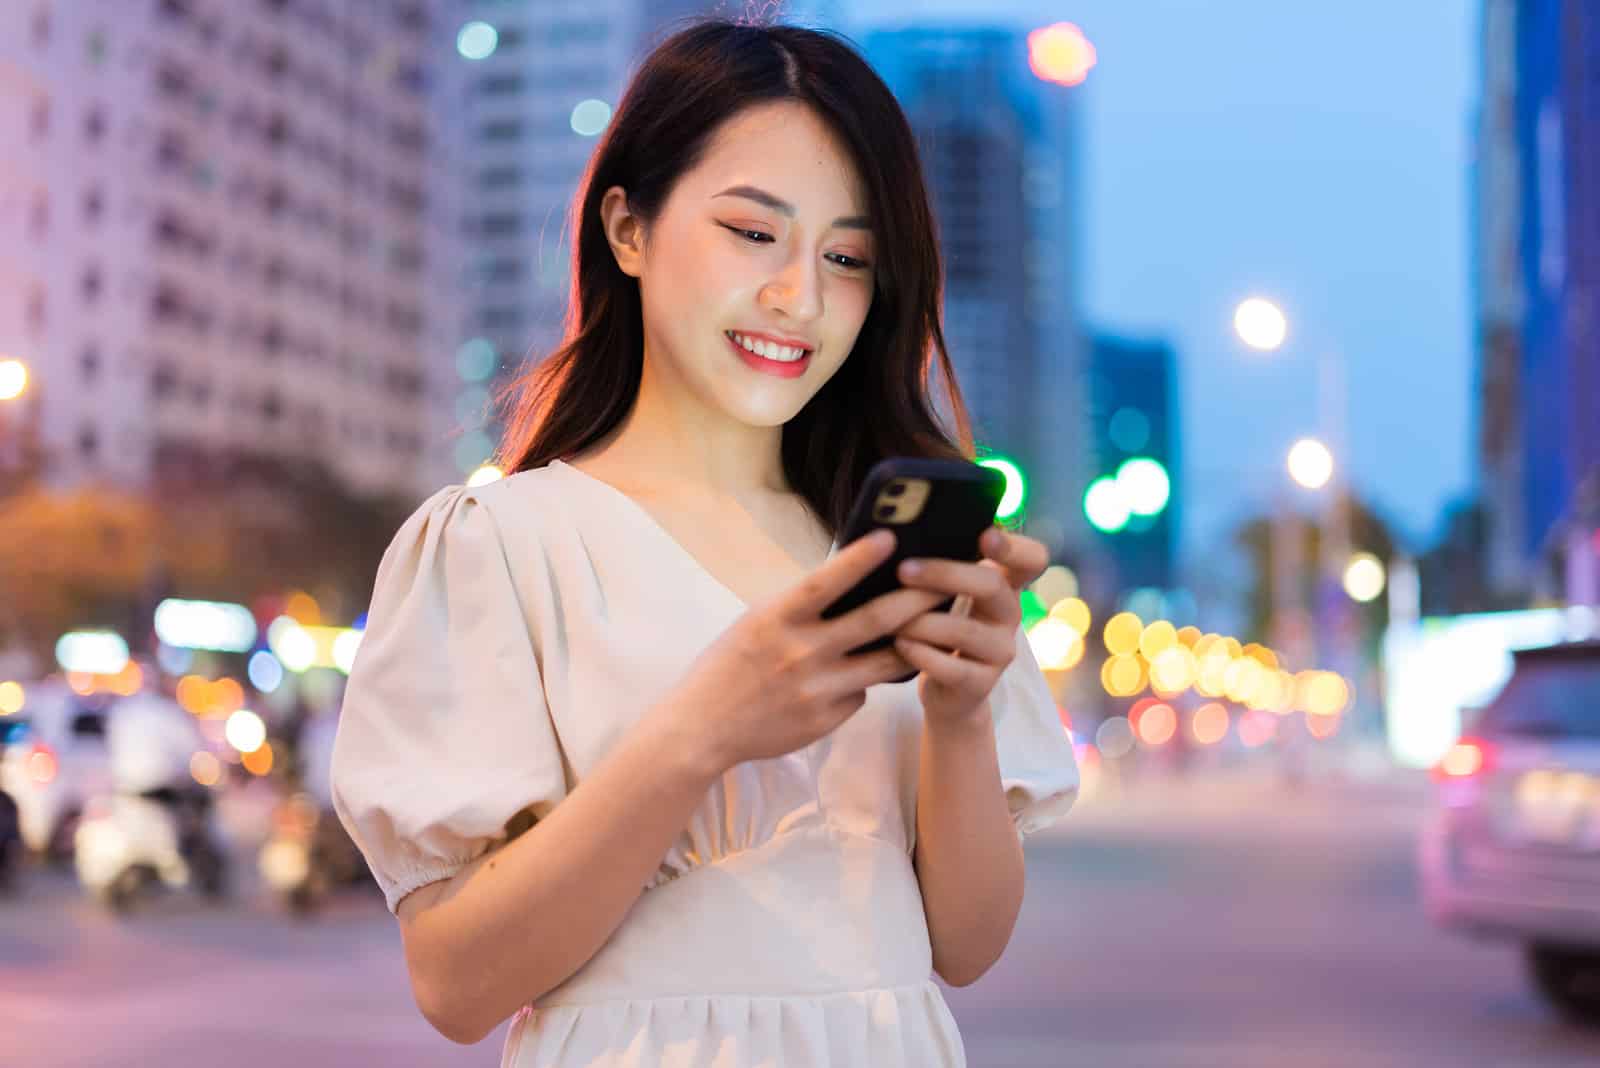 Mujer joven utilizando un smartphone en la calle por la noche